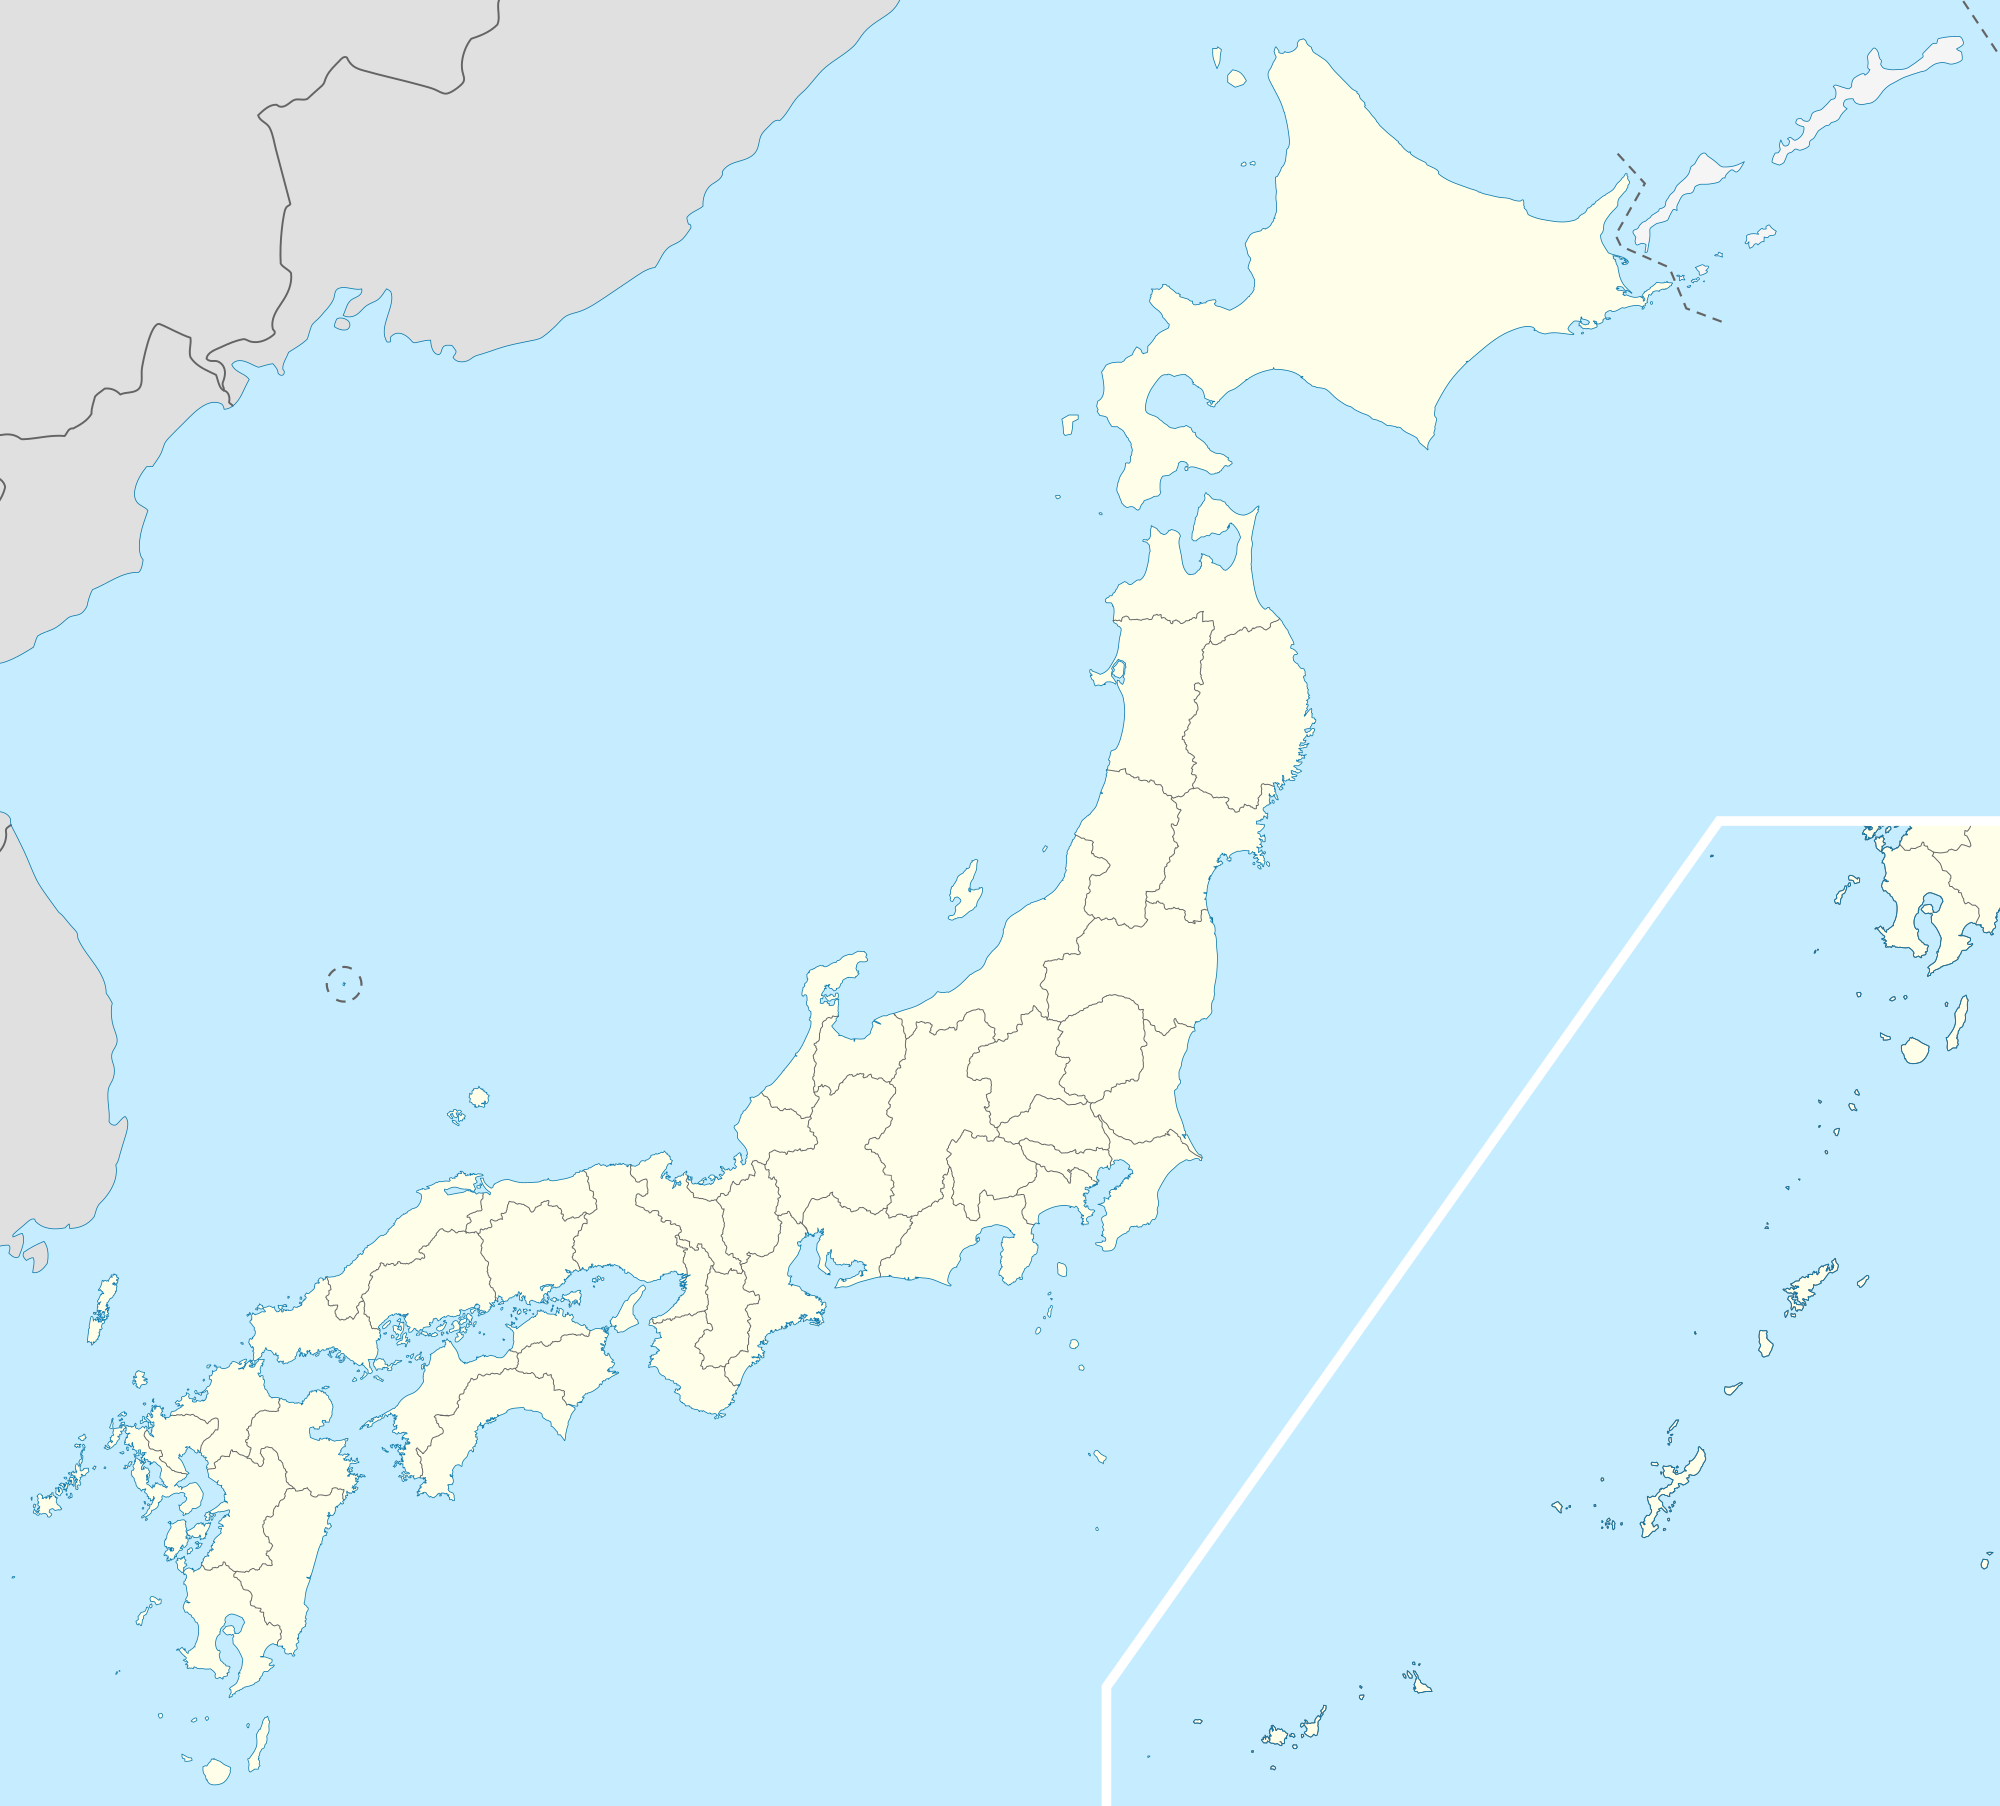 Tokió is located in Japan